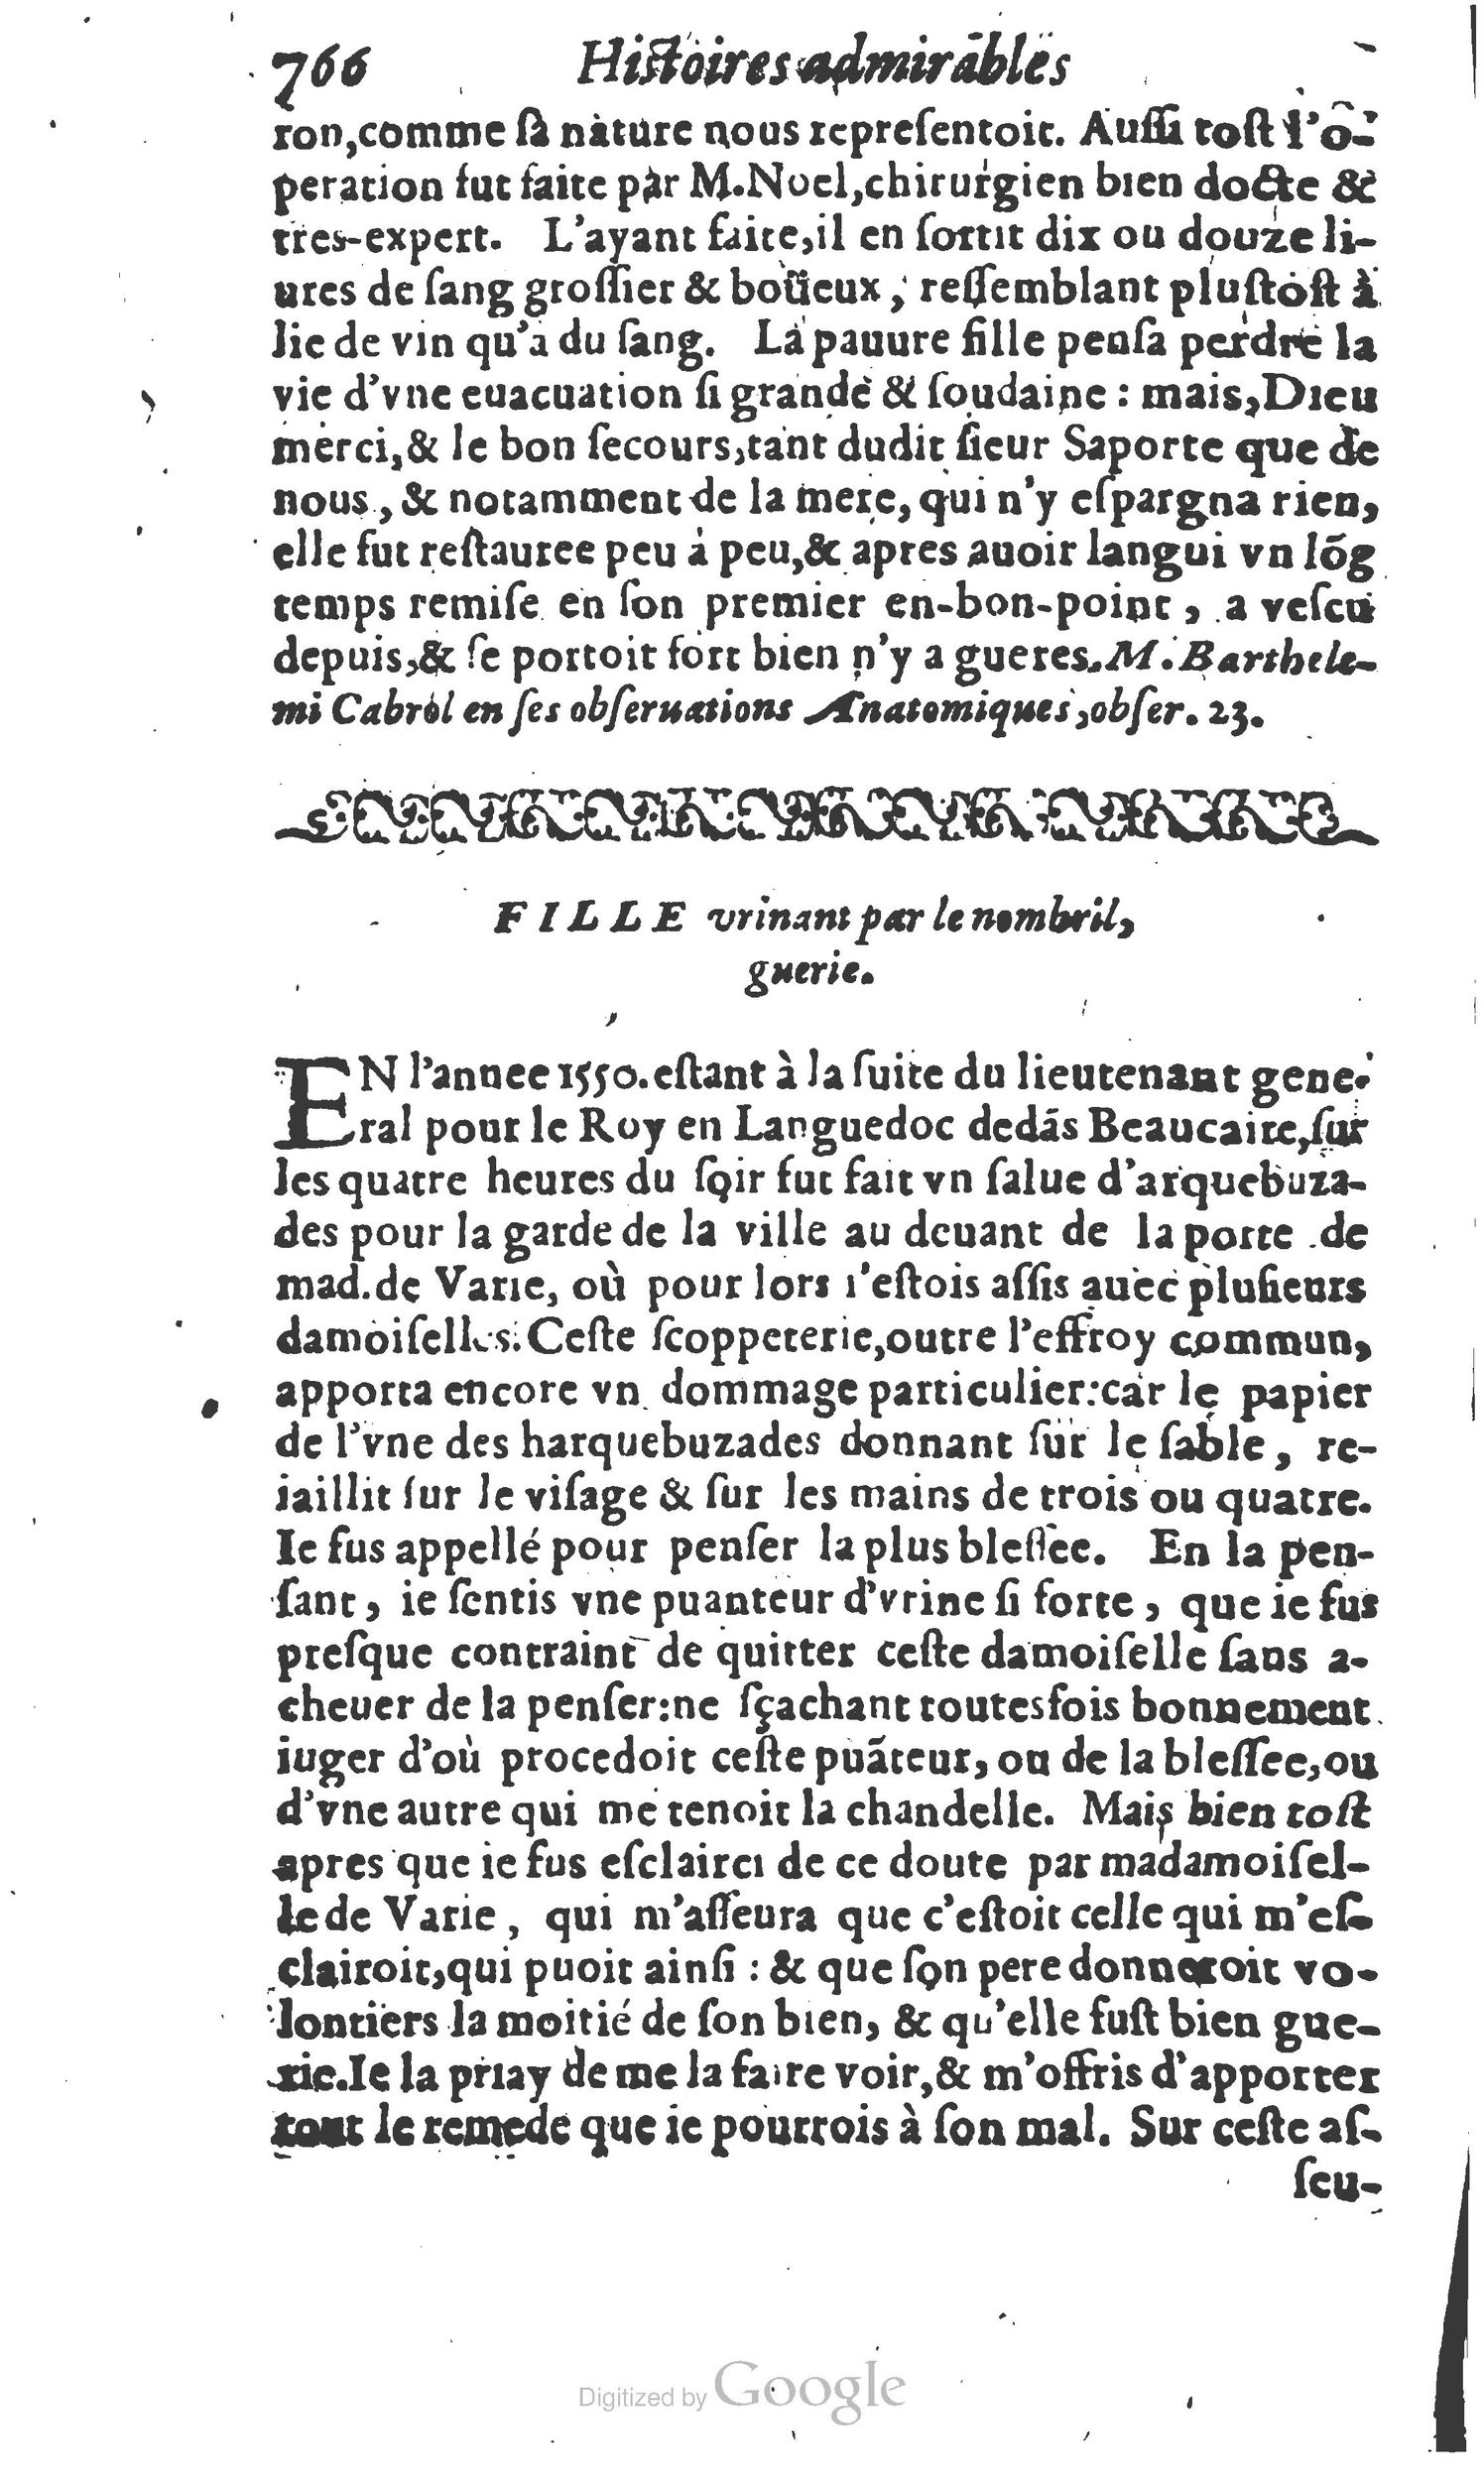 1610 Trésor d’histoires admirables et mémorables de nostre temps Marceau Princeton_Page_0787.jpg